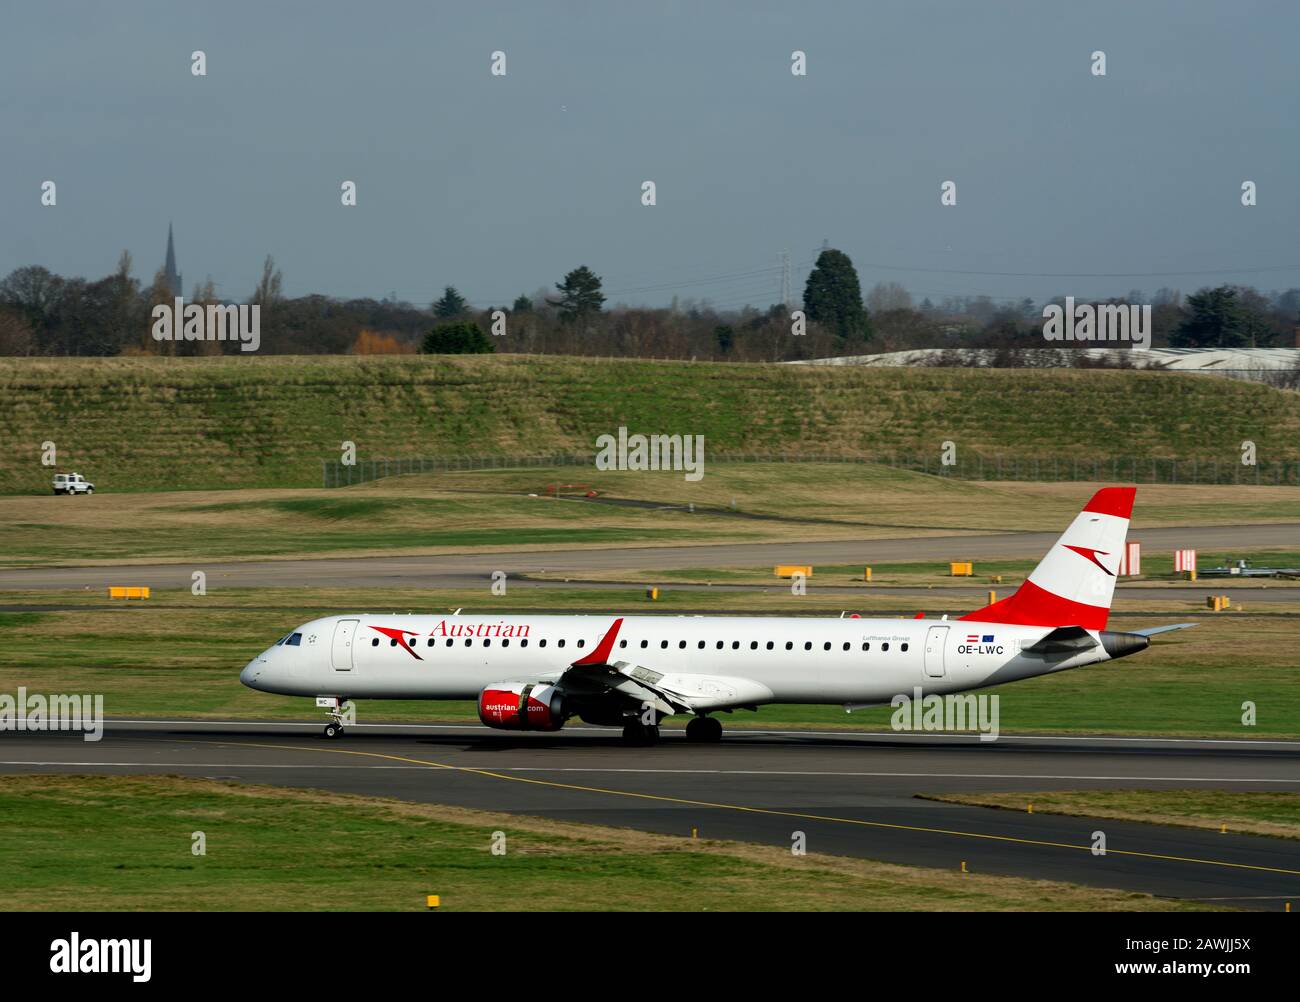 Austrian Airlines Embraer ERJ-195LR atterraggio all'aeroporto di Birmingham, Regno Unito (OE-LWC) Foto Stock